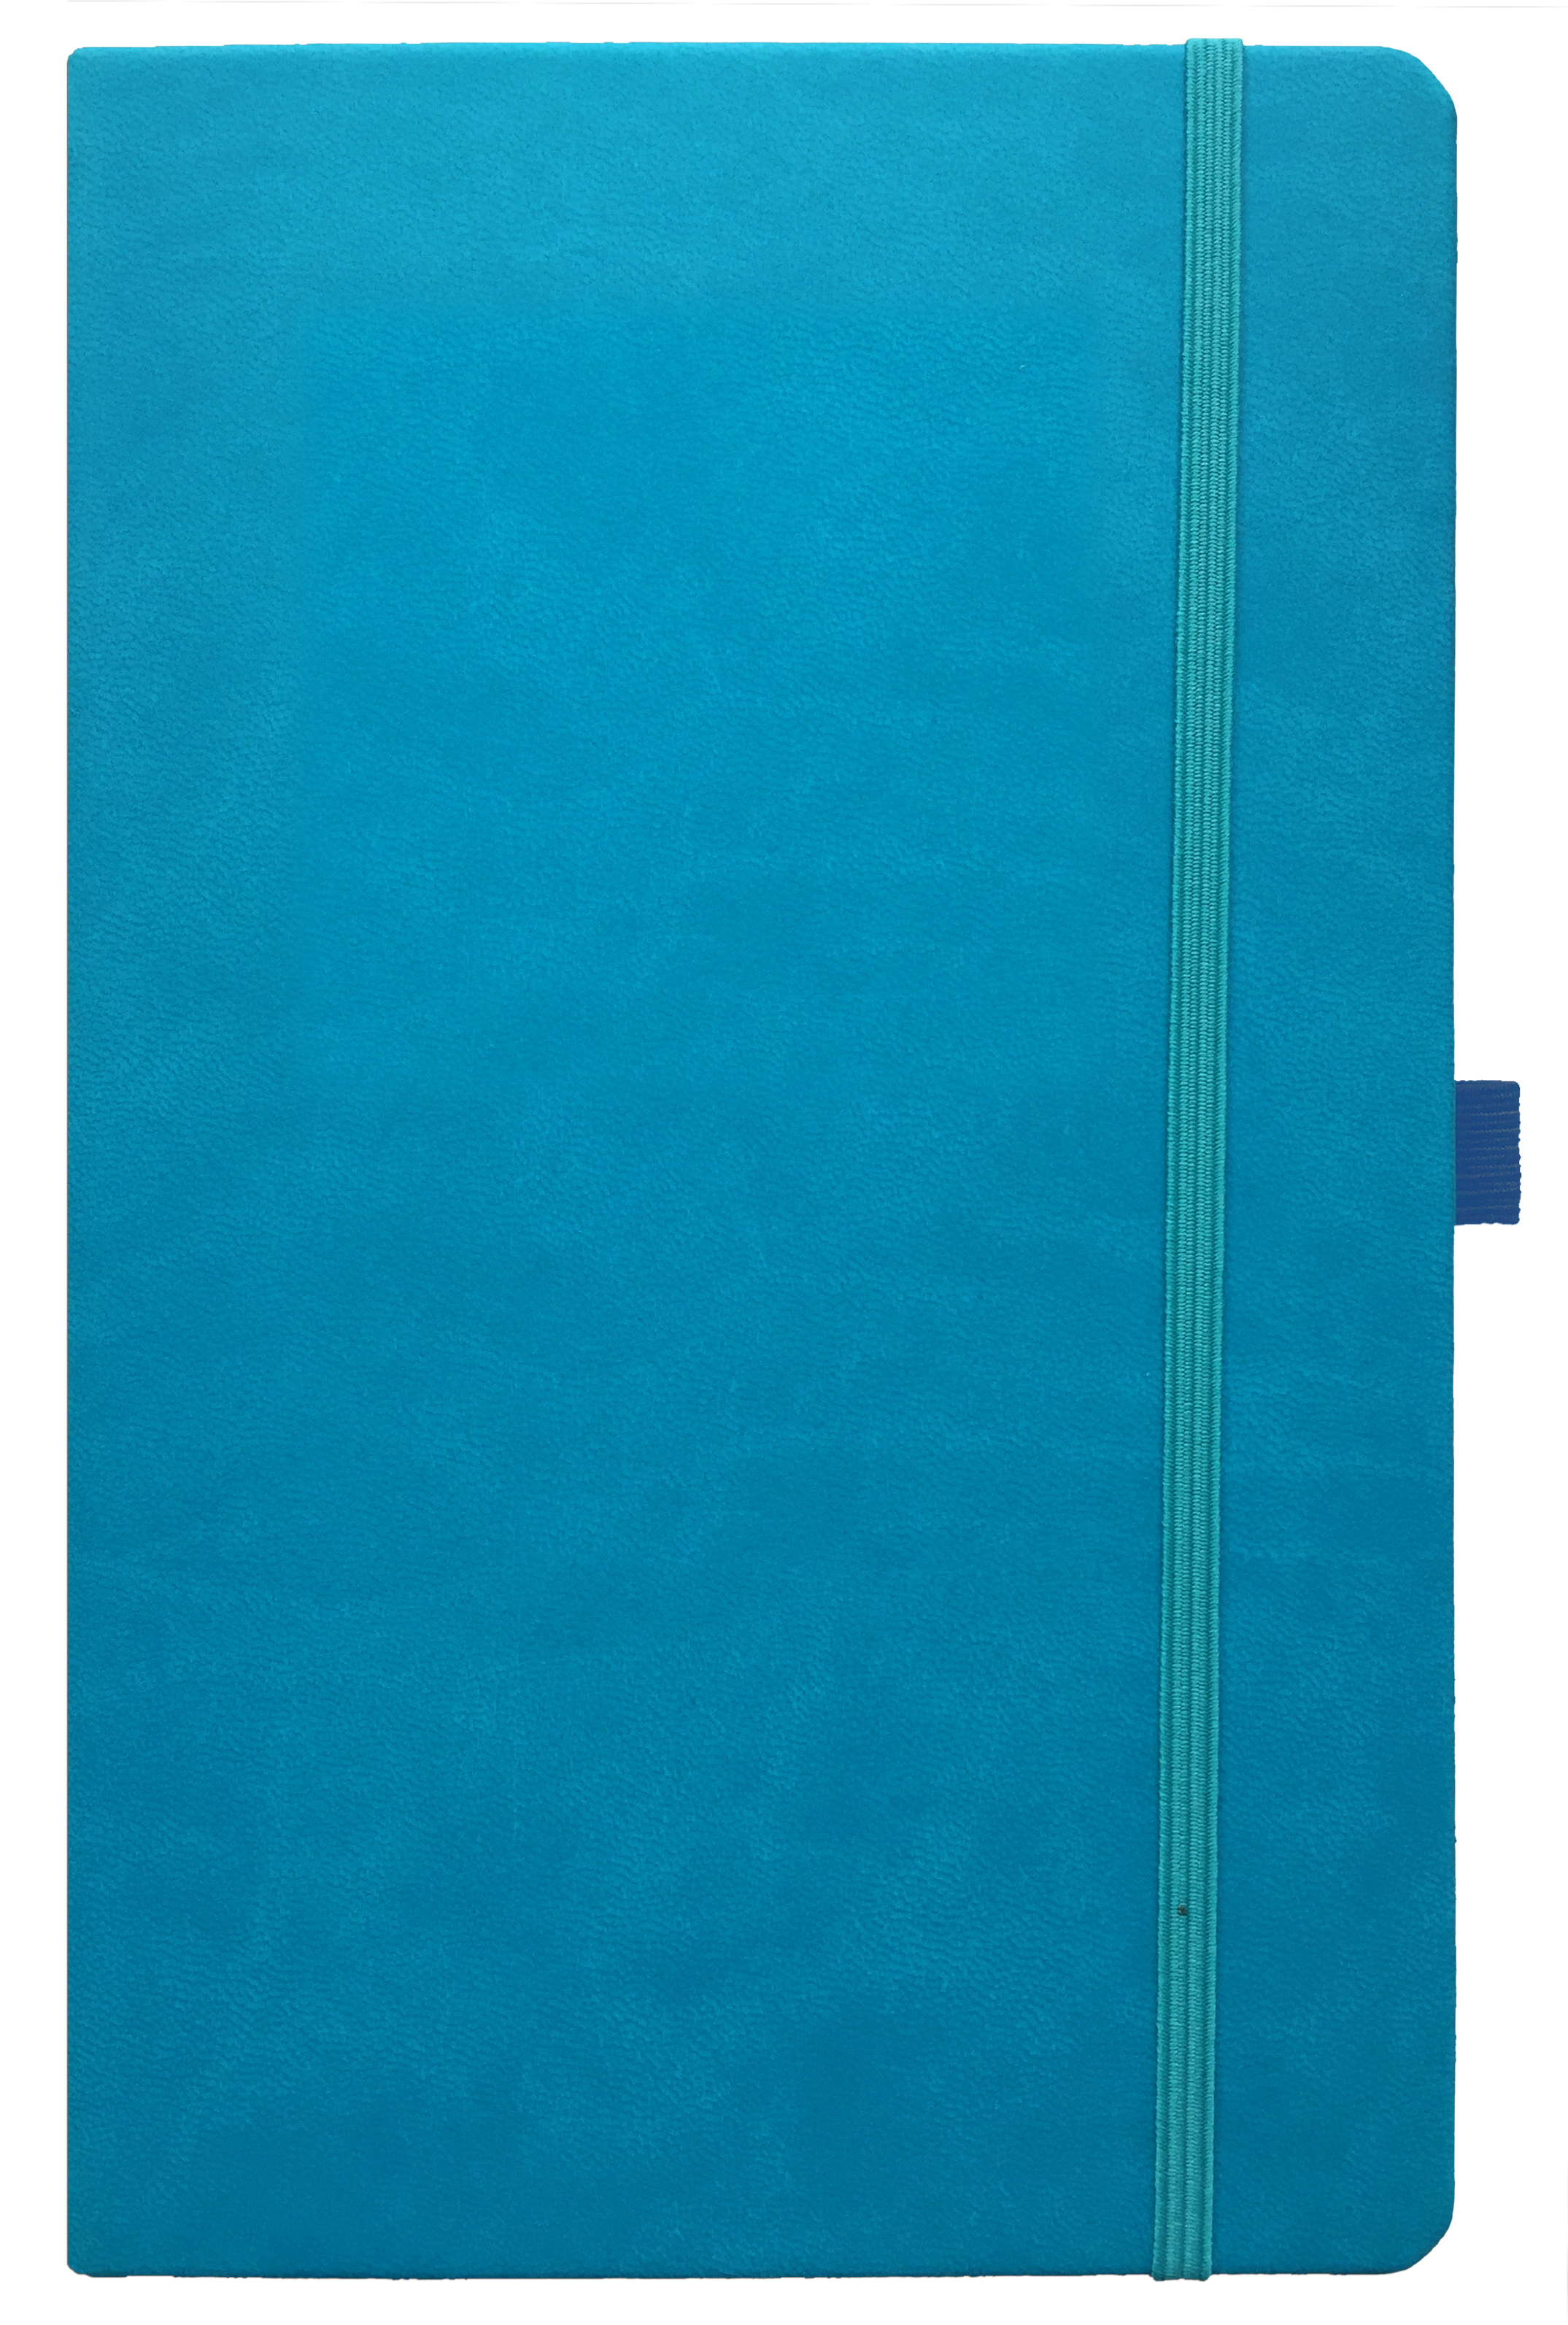 Notizbuch 9 x 14 cm , kariert, 192 S., blau